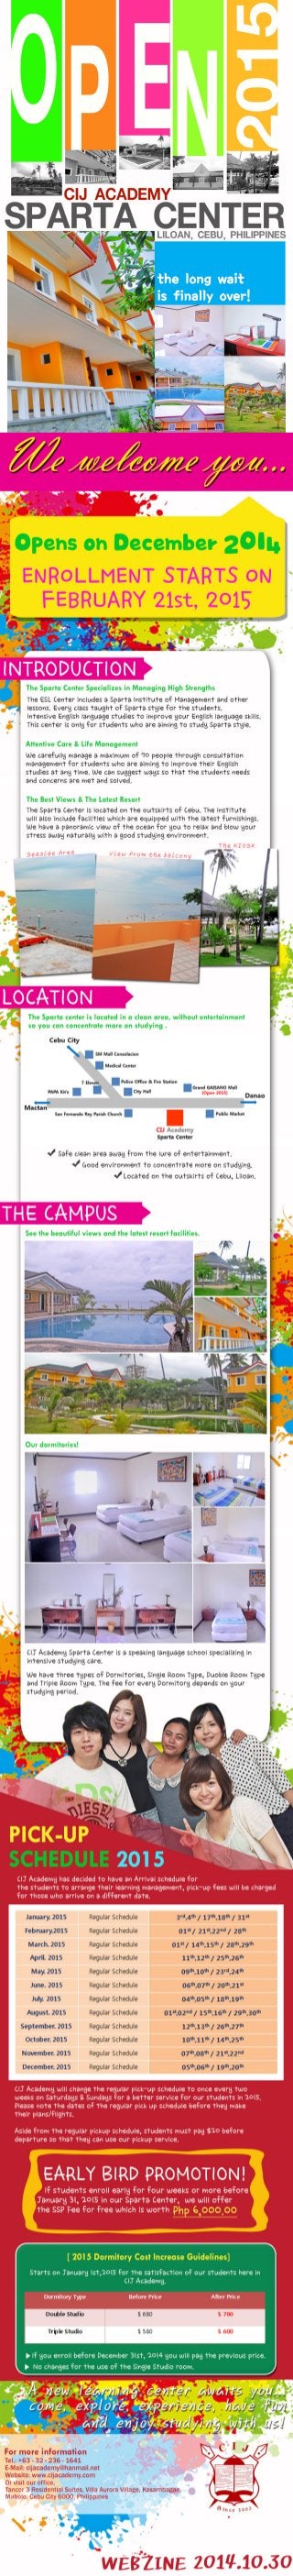 CIJ webzine Giới thiệu cơ sở Sparta Center, Cebu